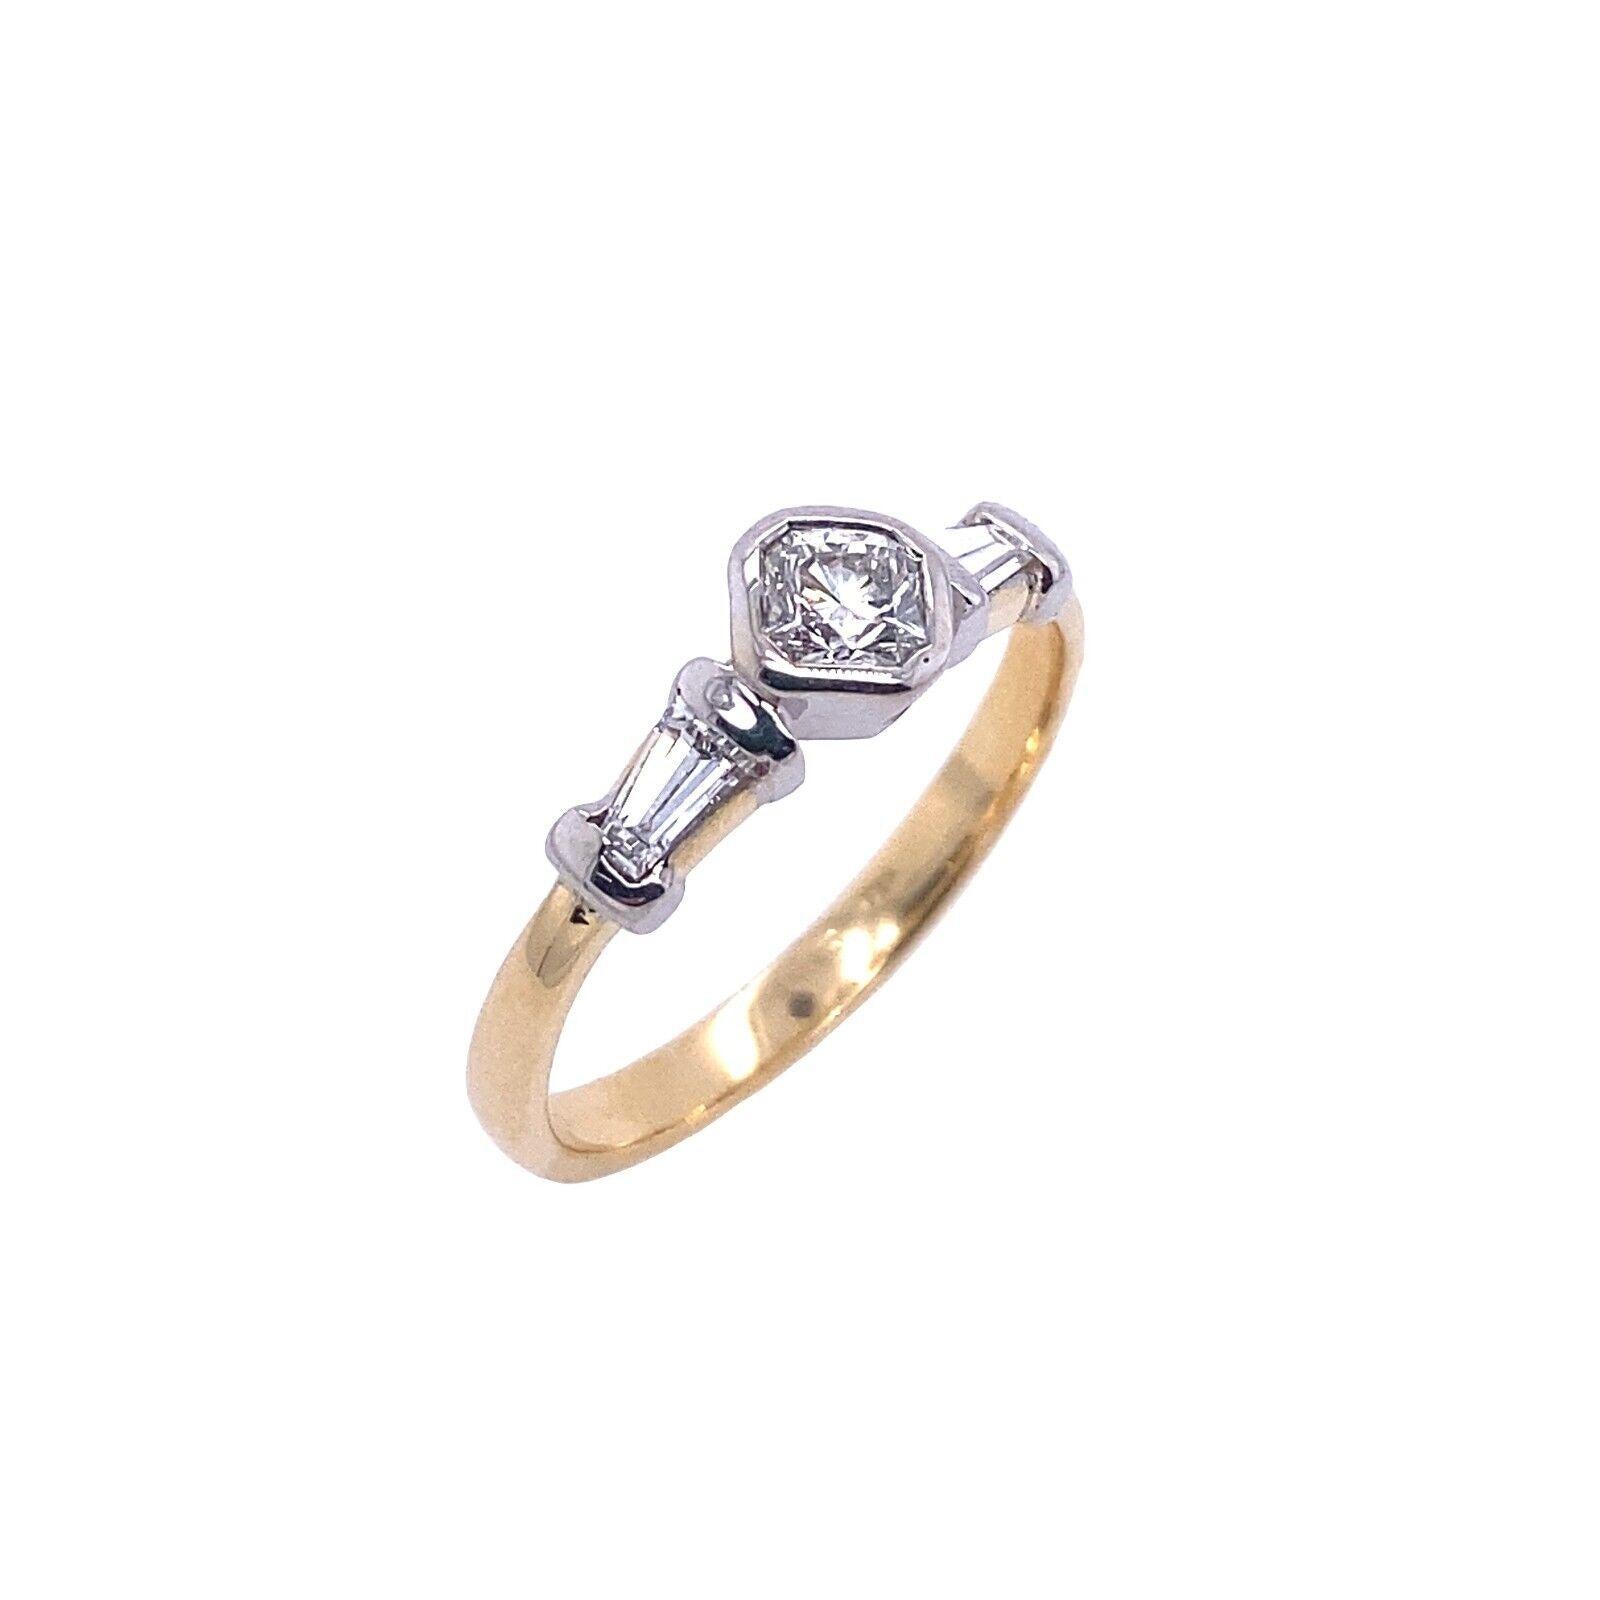 Diese wunderschöne Vintage 18ct Gelb & Weißgold Ring mit 0,25ct G / VS achteckigen Diamanten & Baguettes Diamanten 0,20ct an den Seiten gesetzt.  Der Ring hat einen schönen Vintage-Look.

Zusätzliche Informationen: 
Gesamtgewicht der